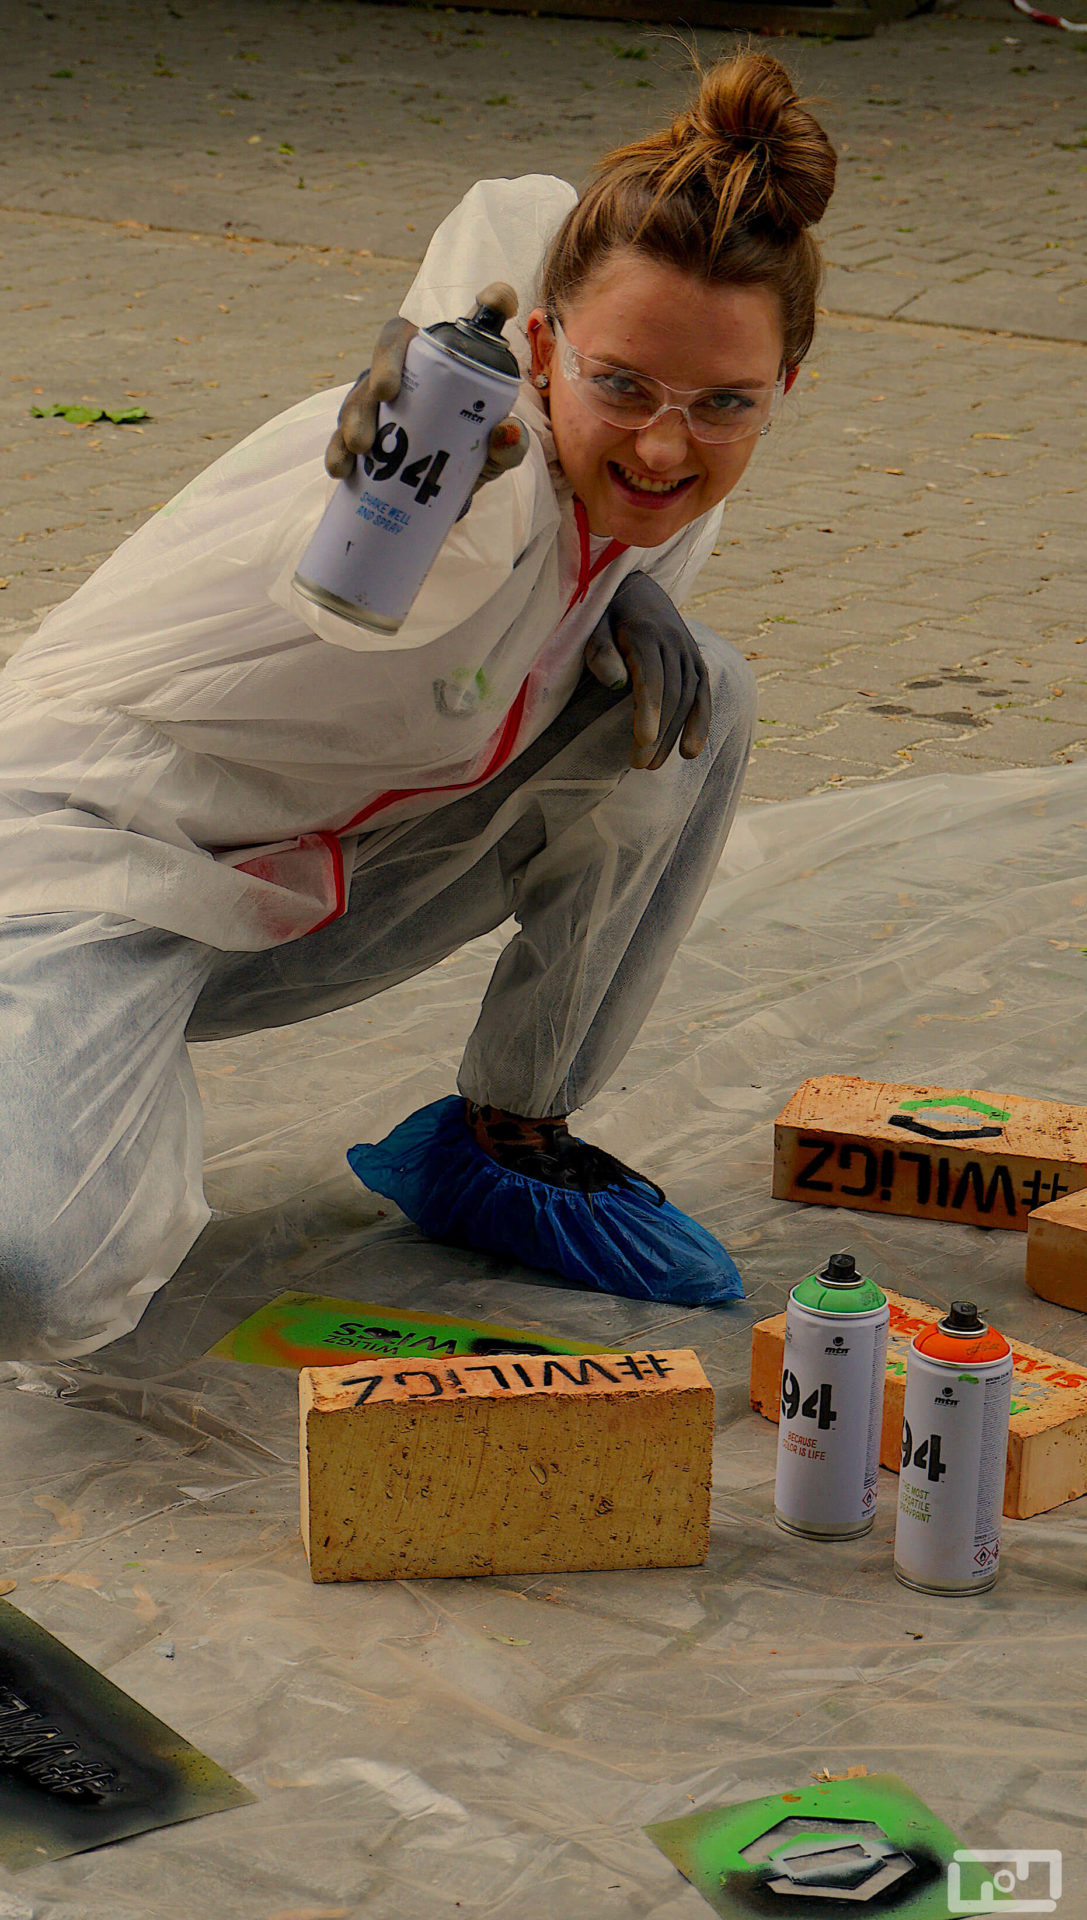 Uśmiechnięta młoda kobieta ubrana w strój malarski i gogle ochronne wyciąga ręke ze sprayem w kierunku aparatu. Przed nią na foli malarskiej leżą pomalowane cegły, spraye oraz szablony.